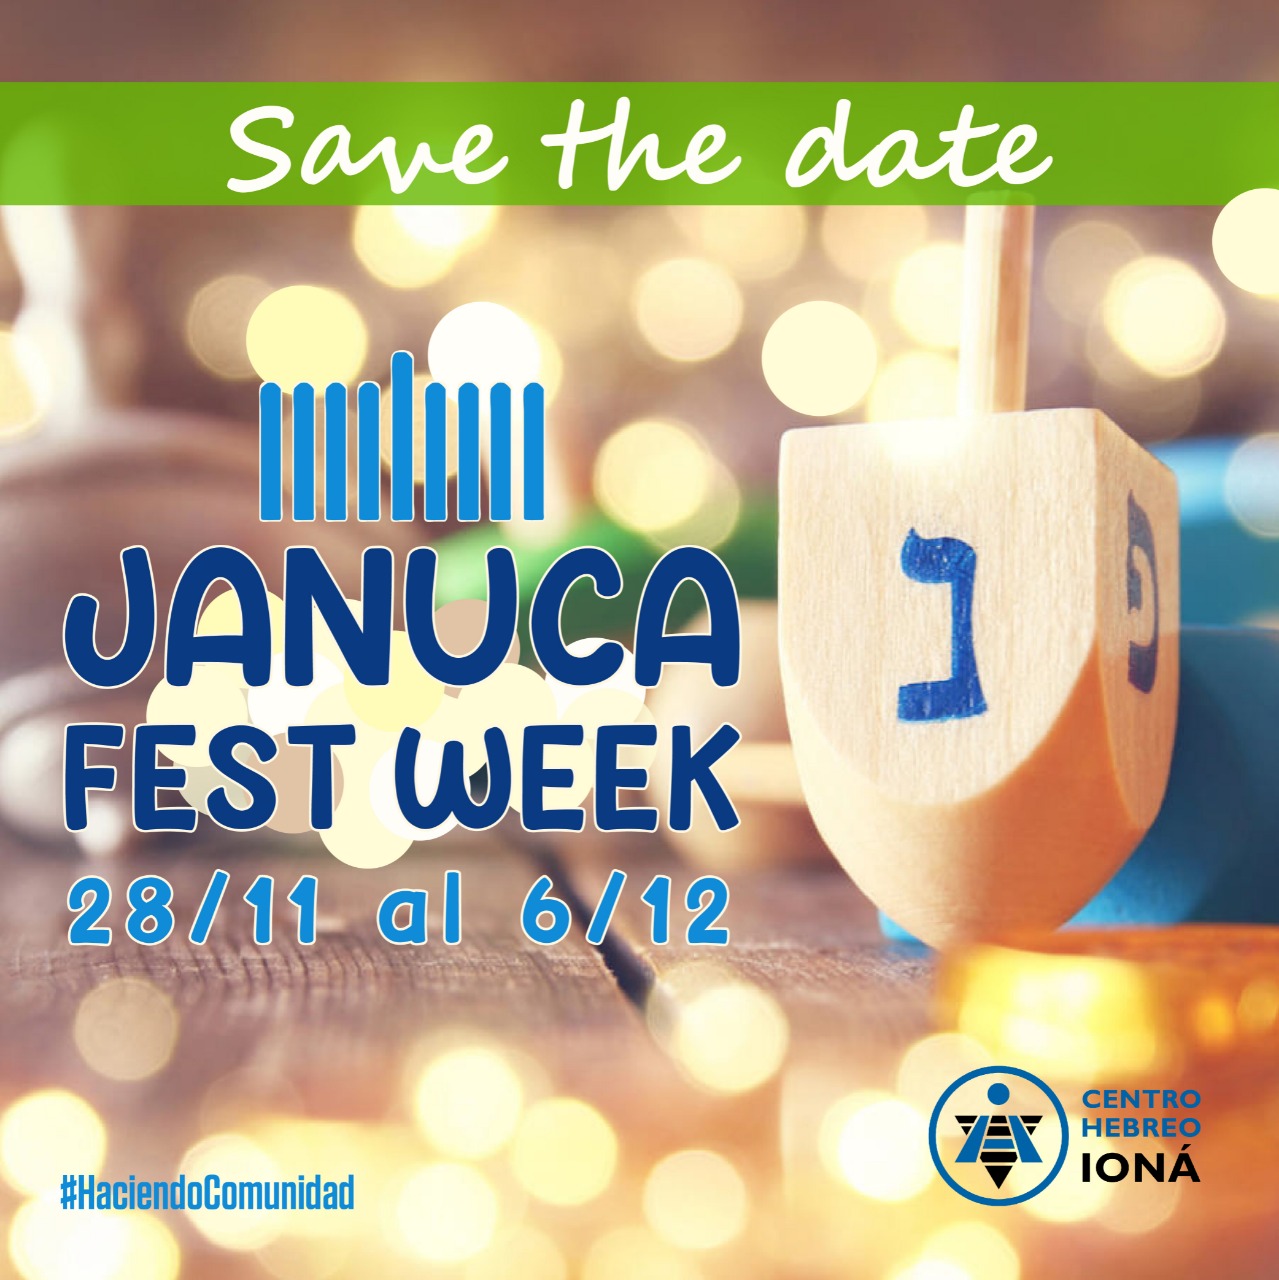 JANUCA FEST WEEK